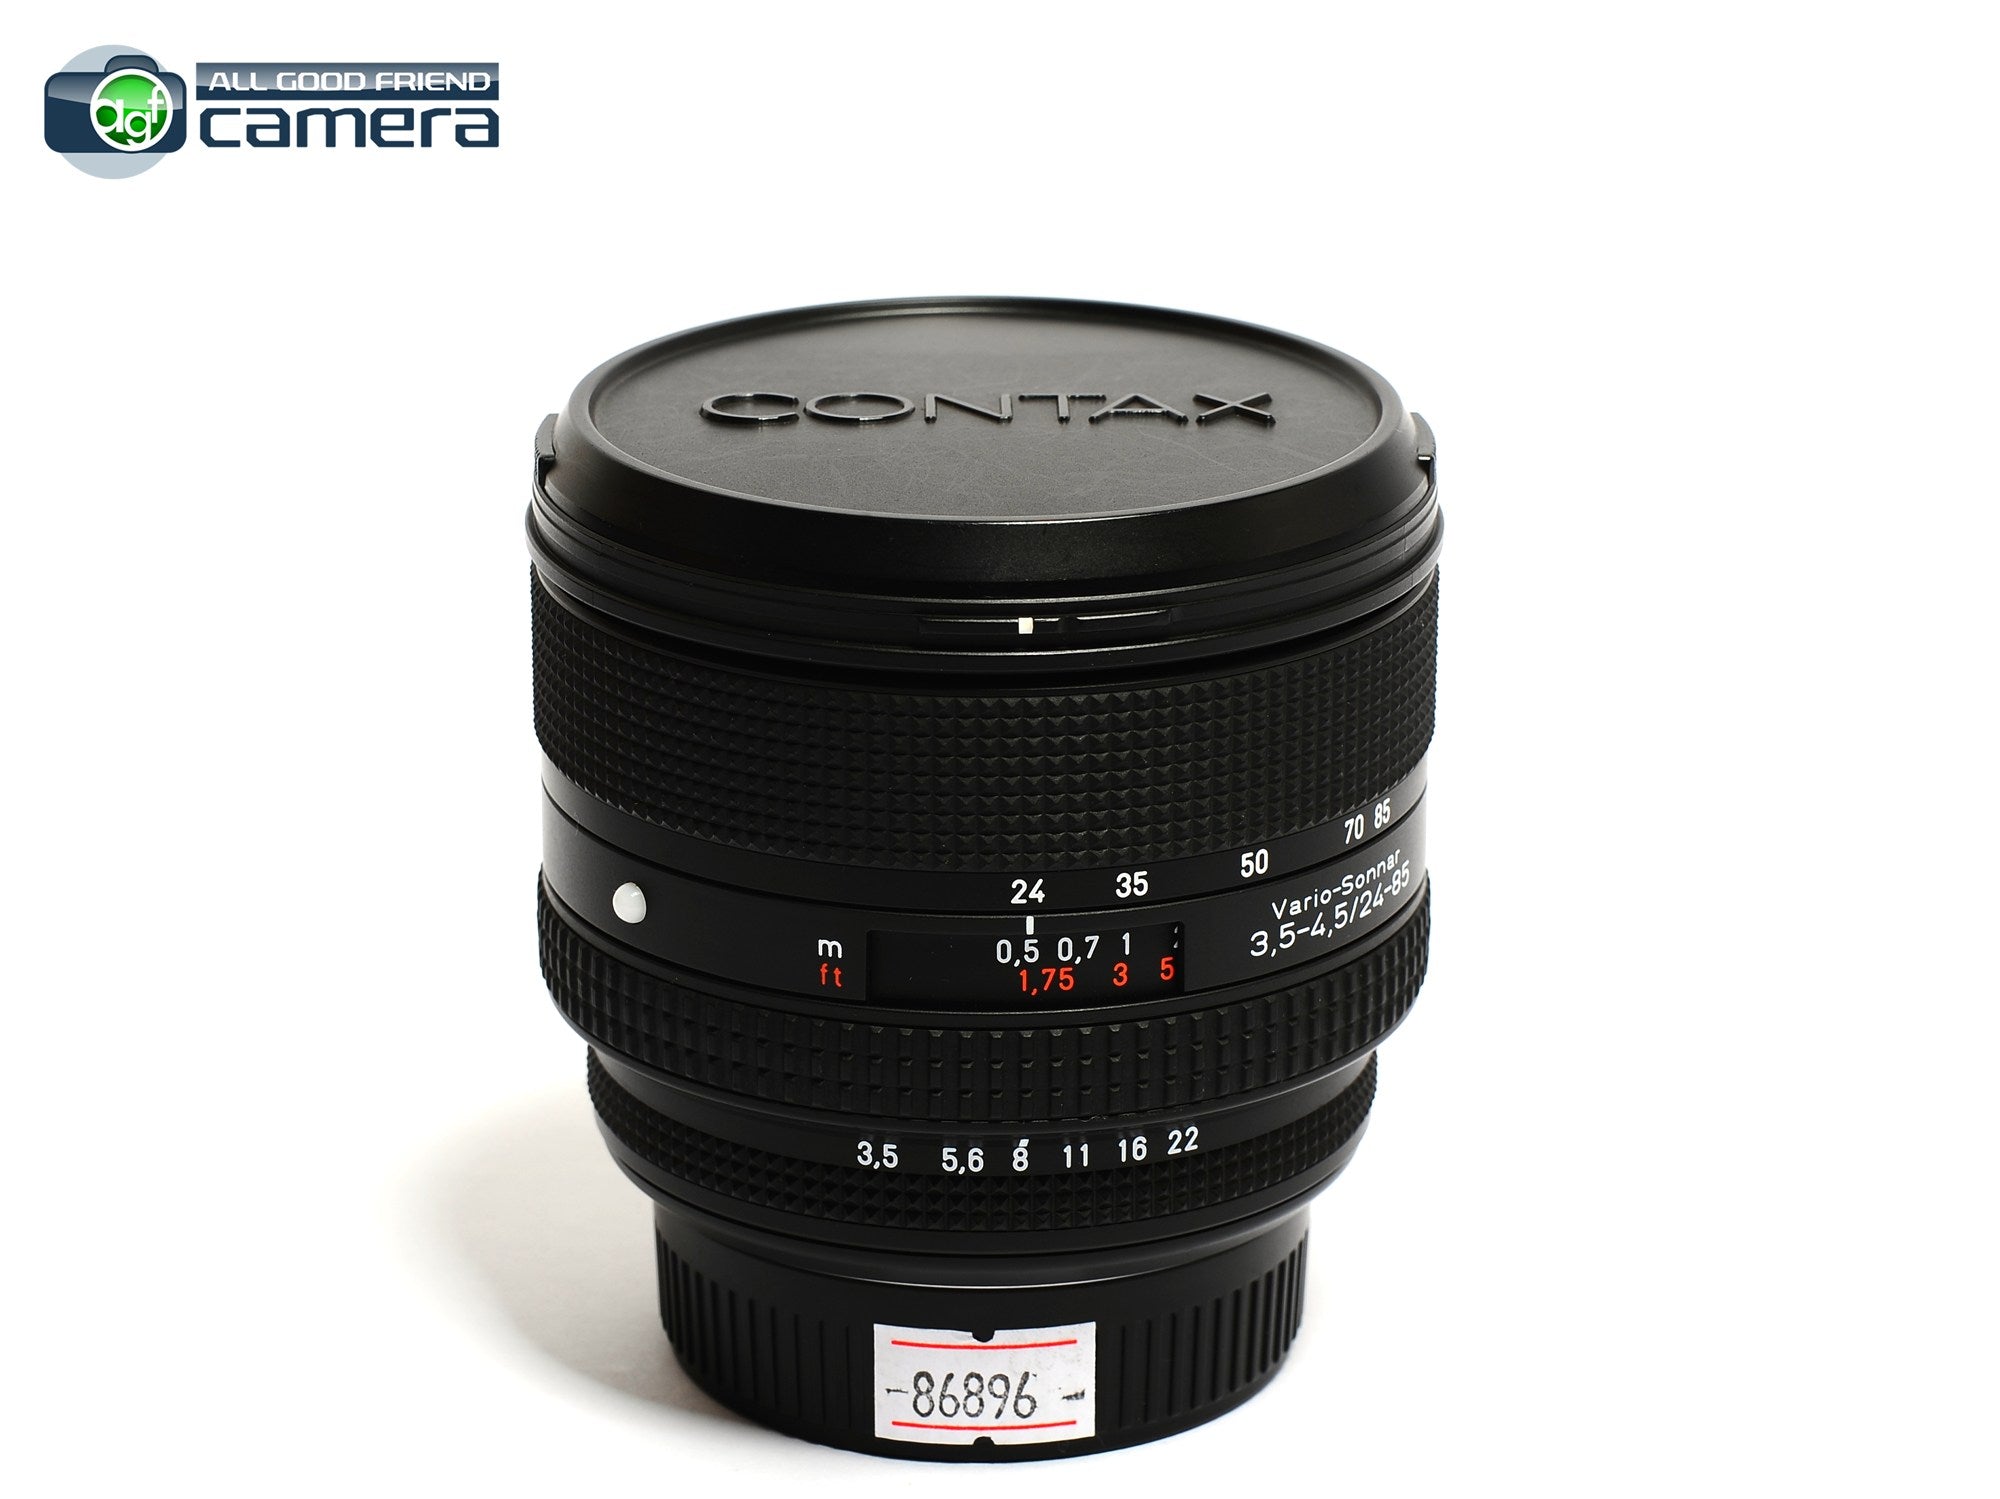 Contax N Vario-Sonnar 24-85mm F/3.5-4.5 T* Lens NX N1 N Digital